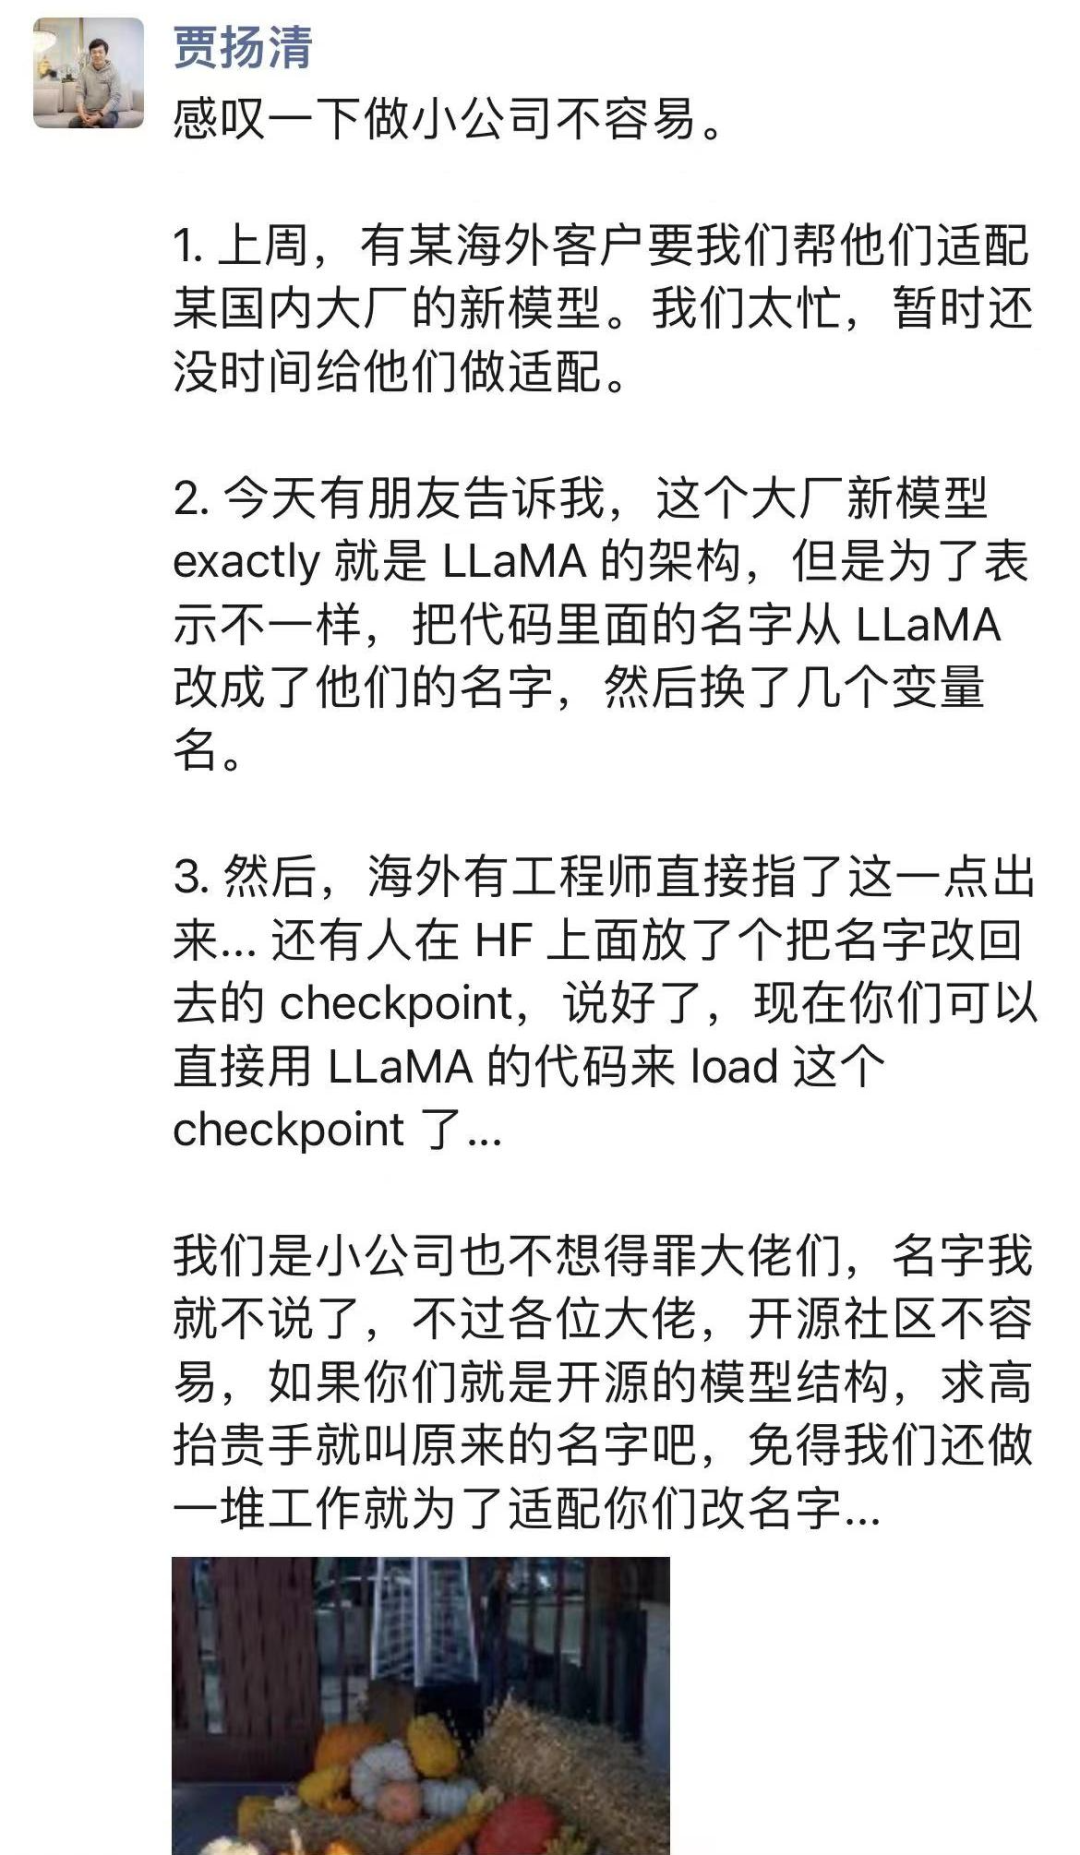 基于LLaMA却改张量名，李开复公司大模型引争议，官方回应来了